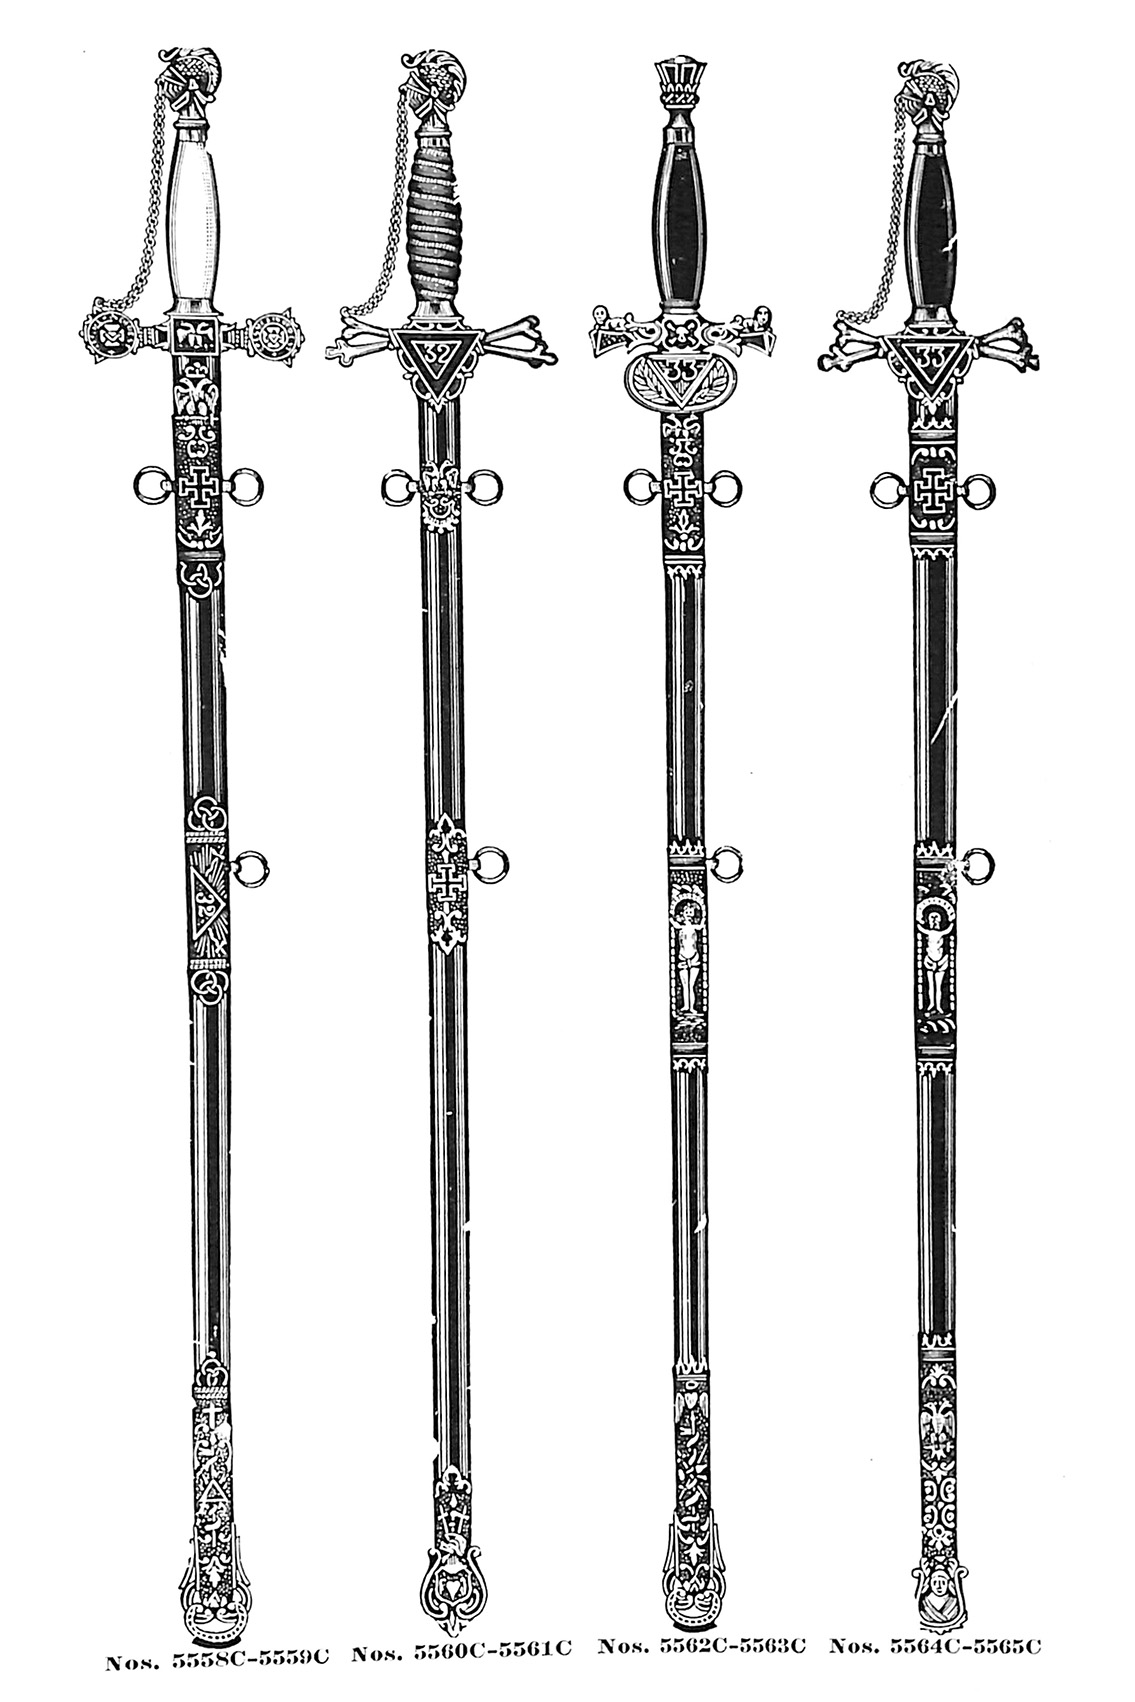 Consistory swords no. 5558C-5565C